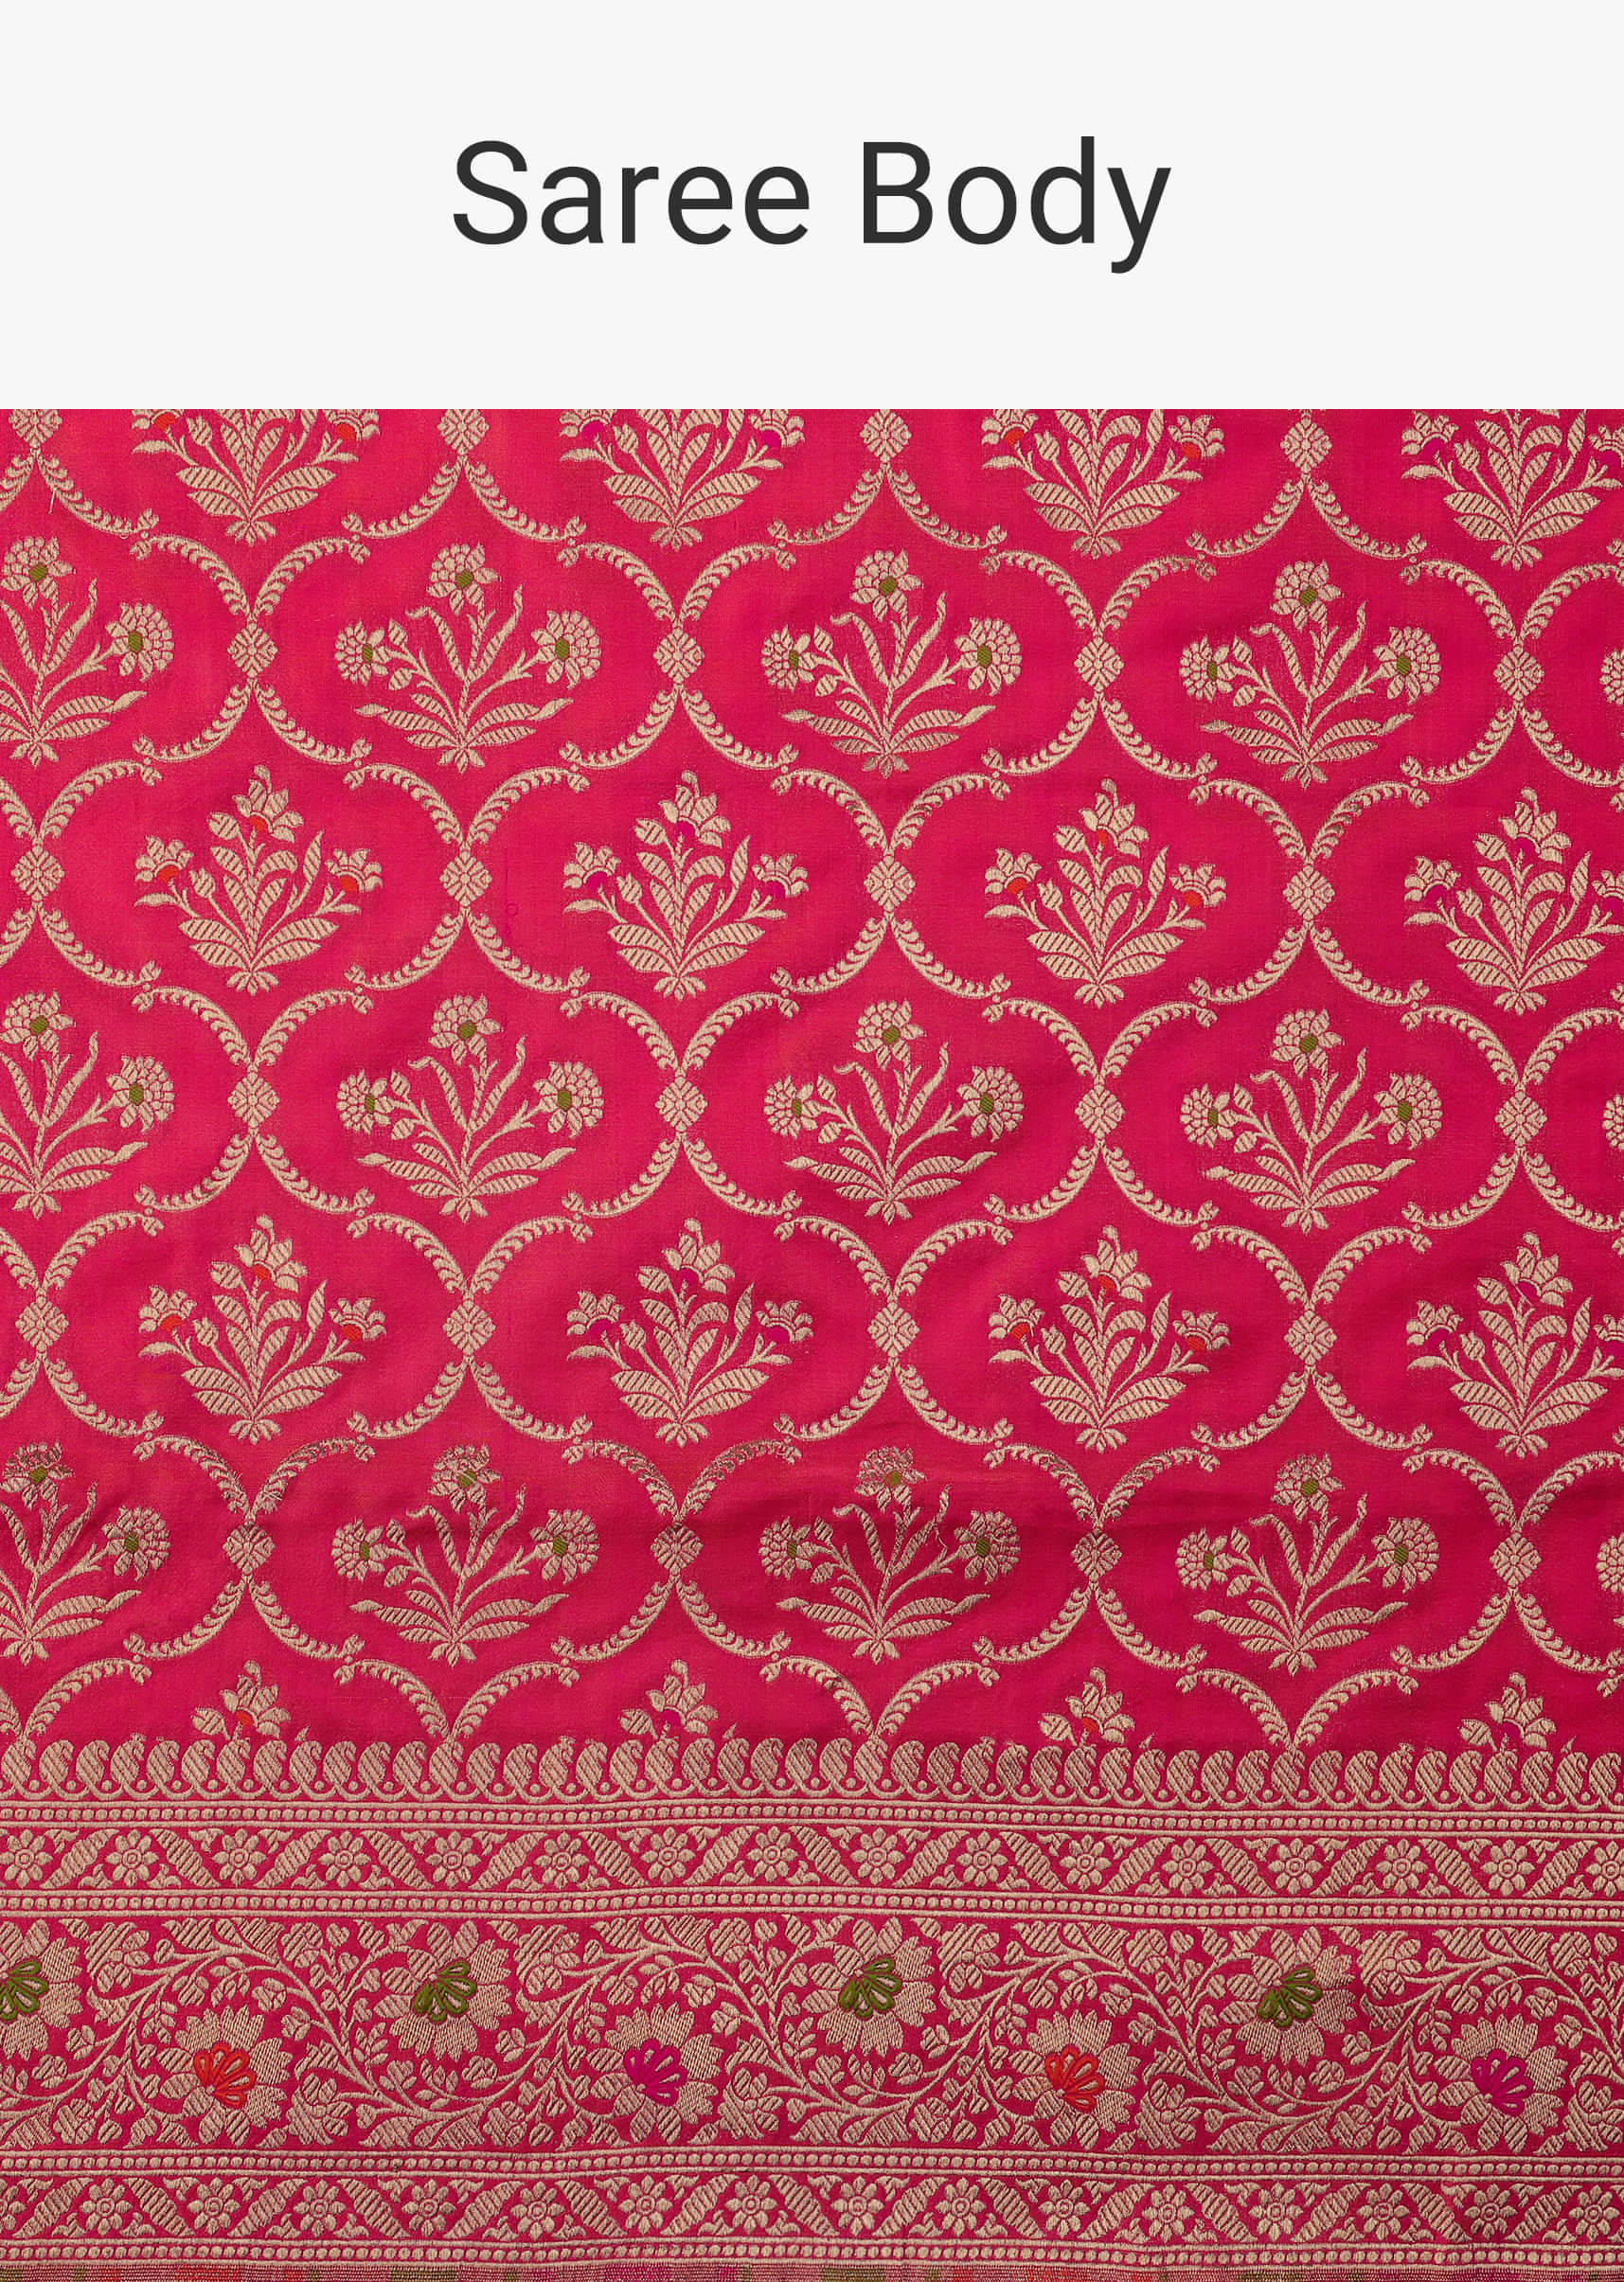 Cheery Pink Handloom Banarasi Saree In Uppada Silk With Gold Weave Meenakari Border